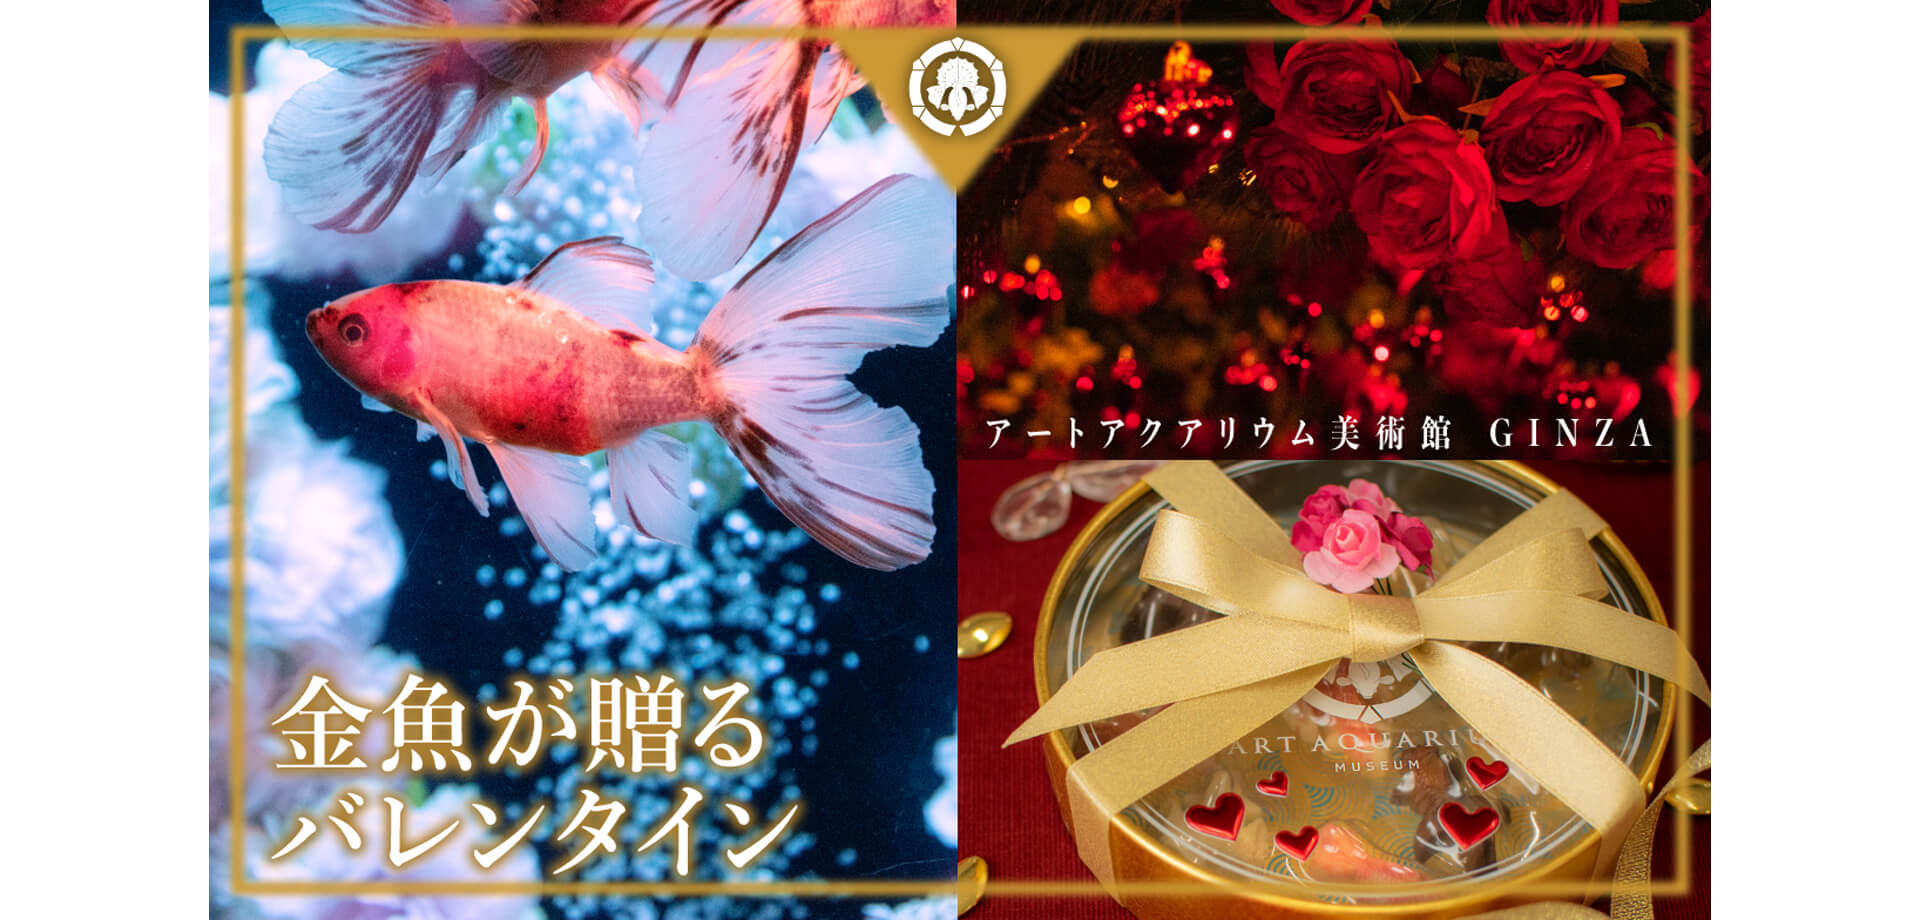 アートアクアリウム美術館 GINZA バレンタイン限定金魚チョコ付きペアチケット